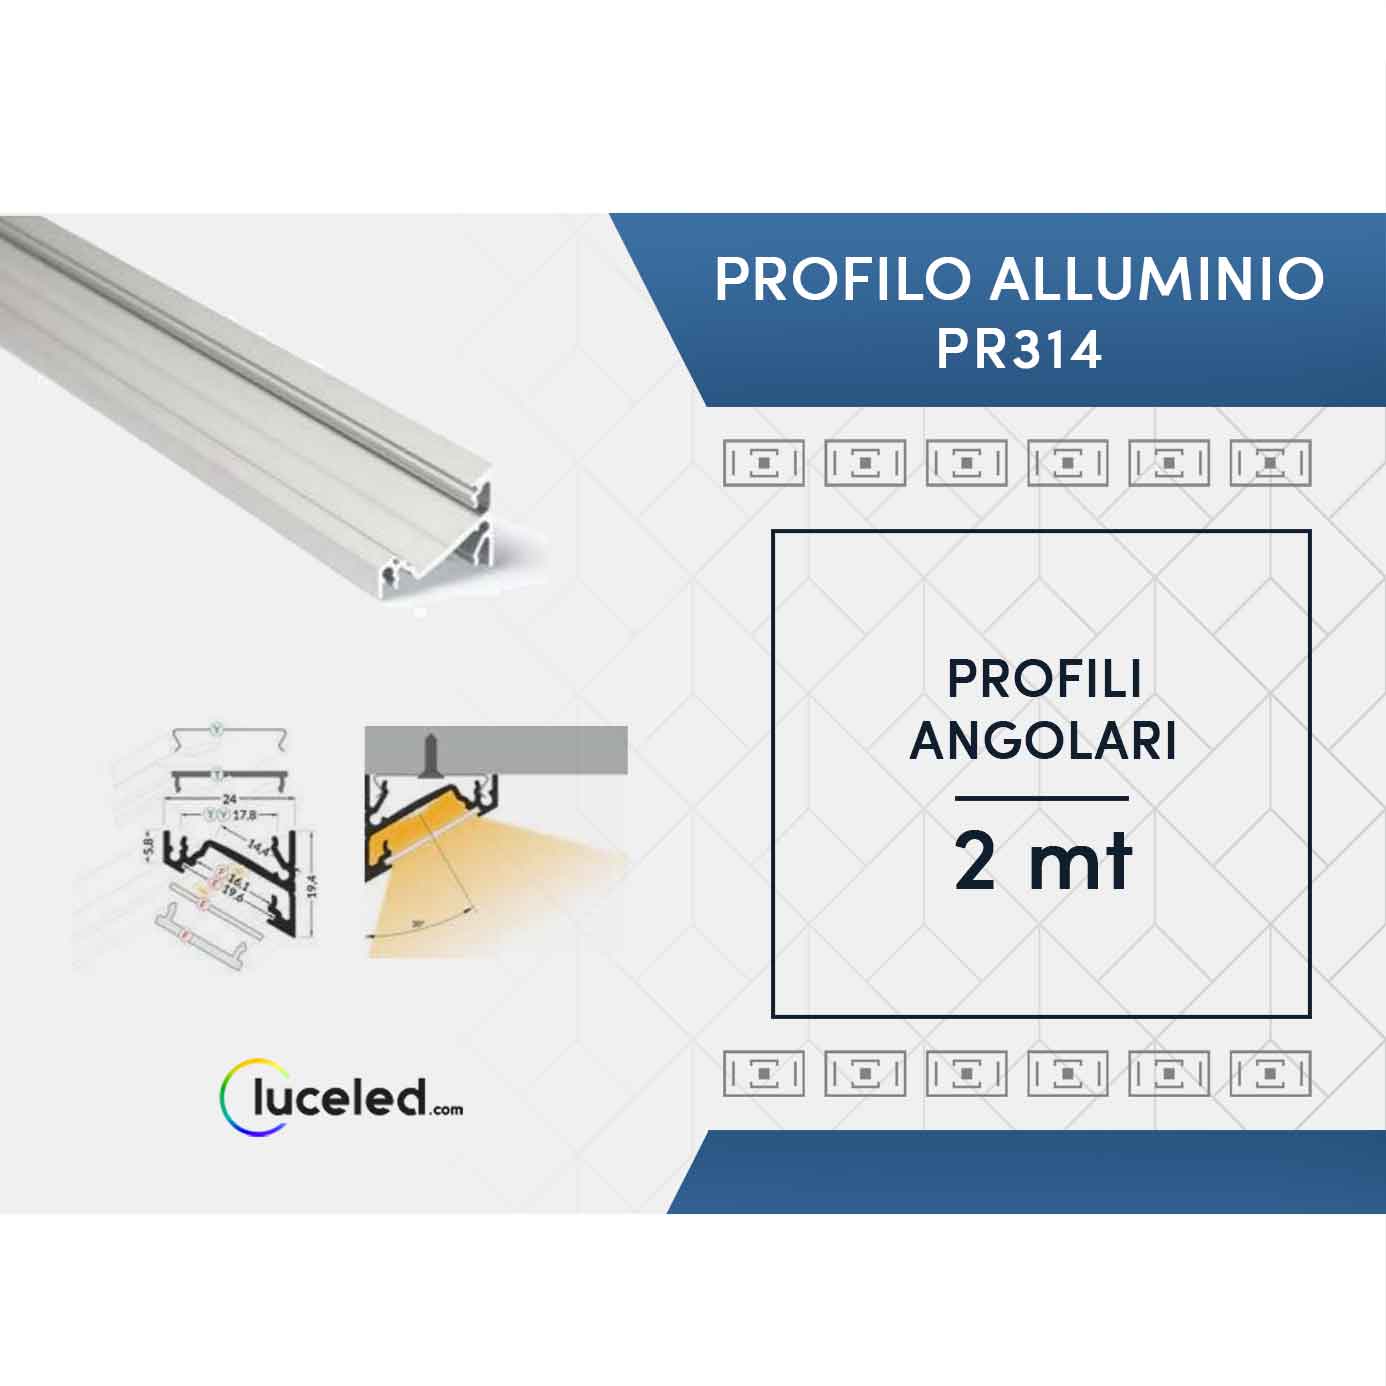 Ledco pr314 kit profilo angolare in alluminio 10 metri per strisce led